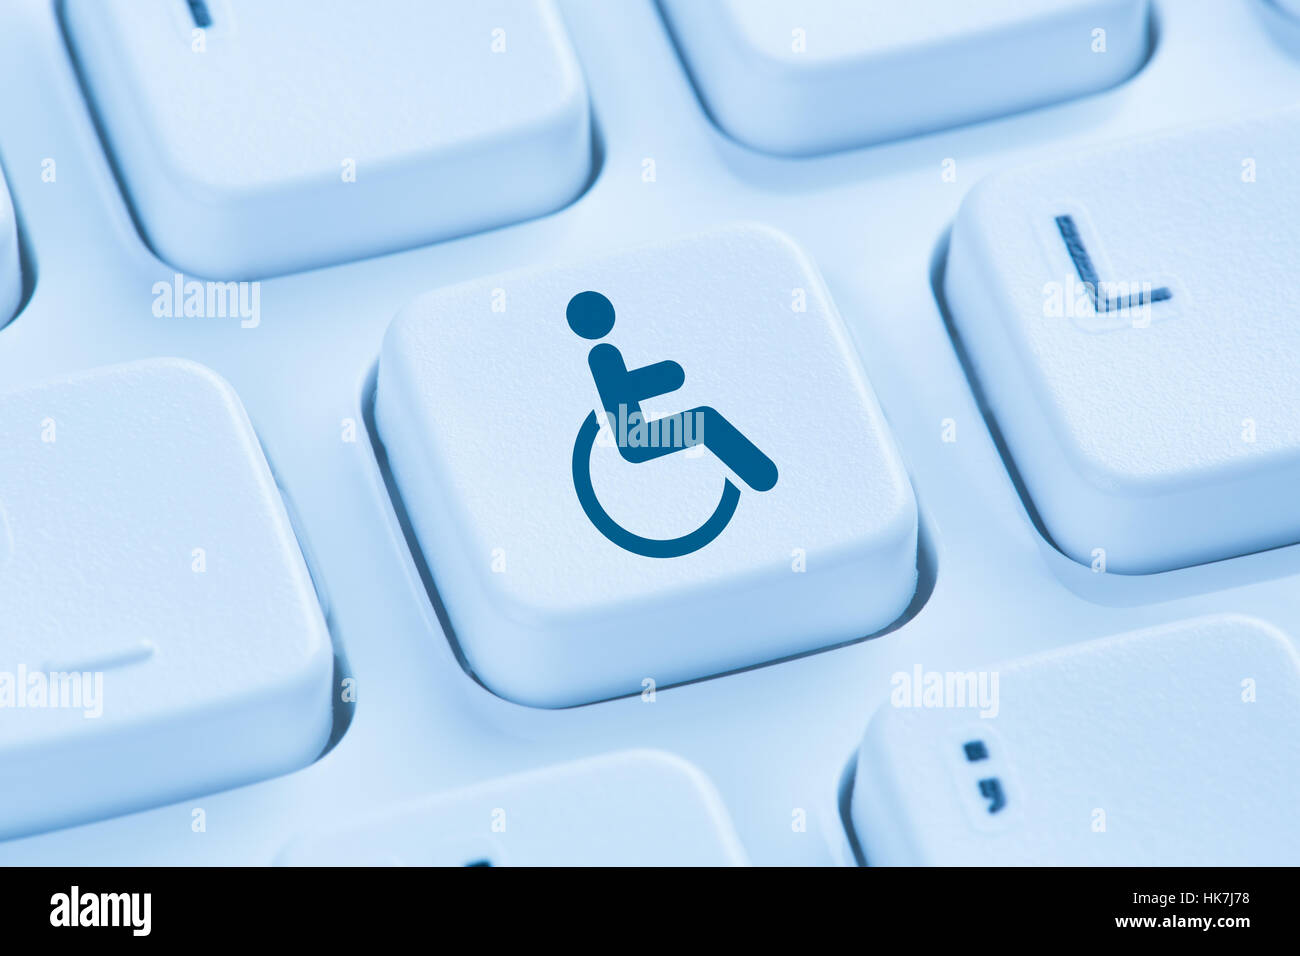 Accesibilidad web sitio de internet online ordenador para personas con discapacidad símbolo teclado azul Foto de stock